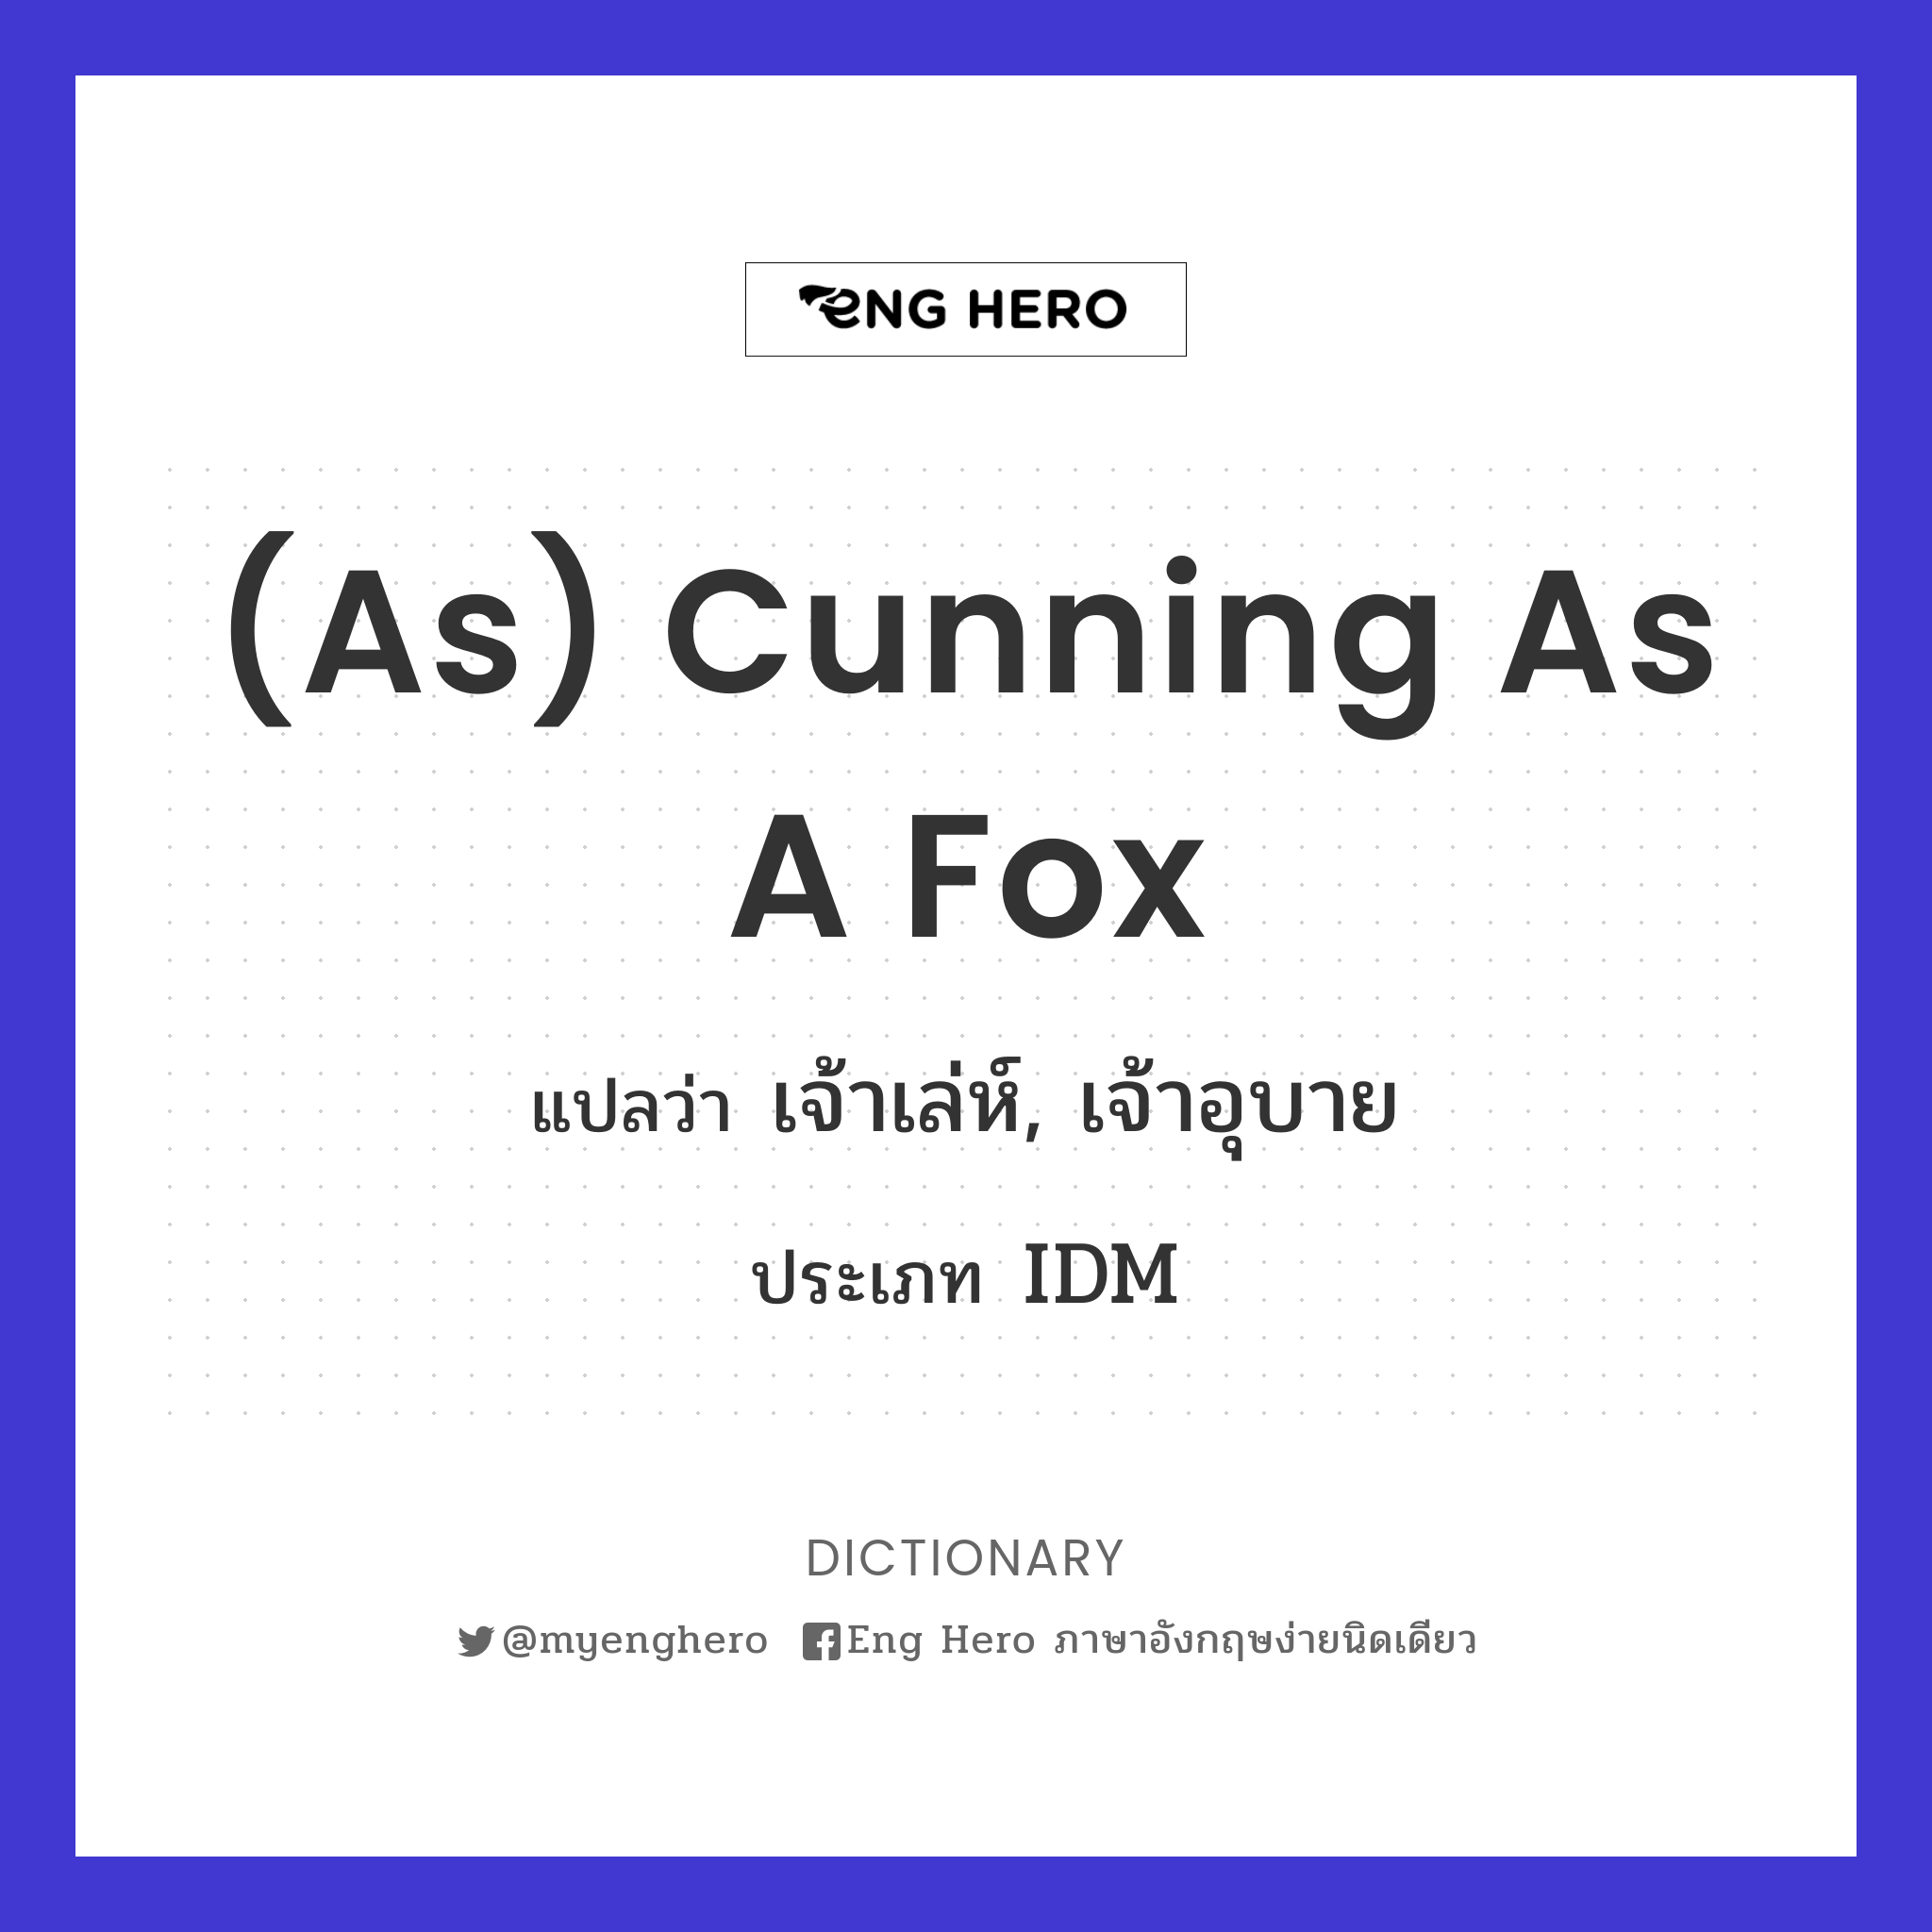 (as) cunning as a fox